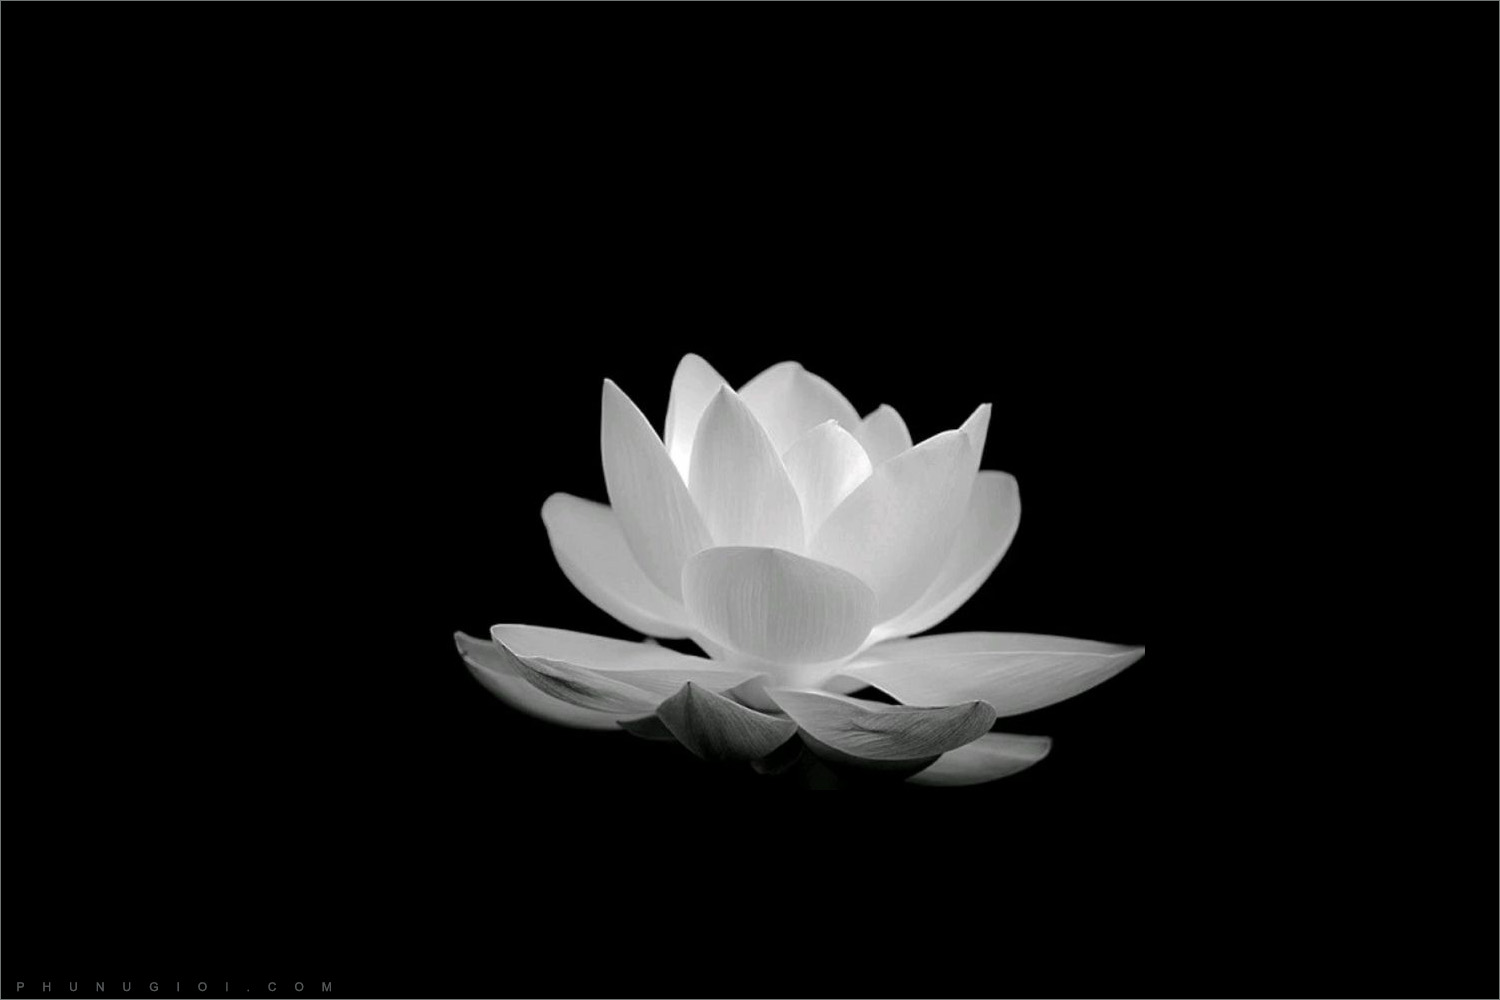 Hình nền hoa sen thiêng liêng Hình nền máy tính Nội dung miễn phí Clip art   png tải về  Miễn phí trong suốt Lotus Gia đình png Tải về